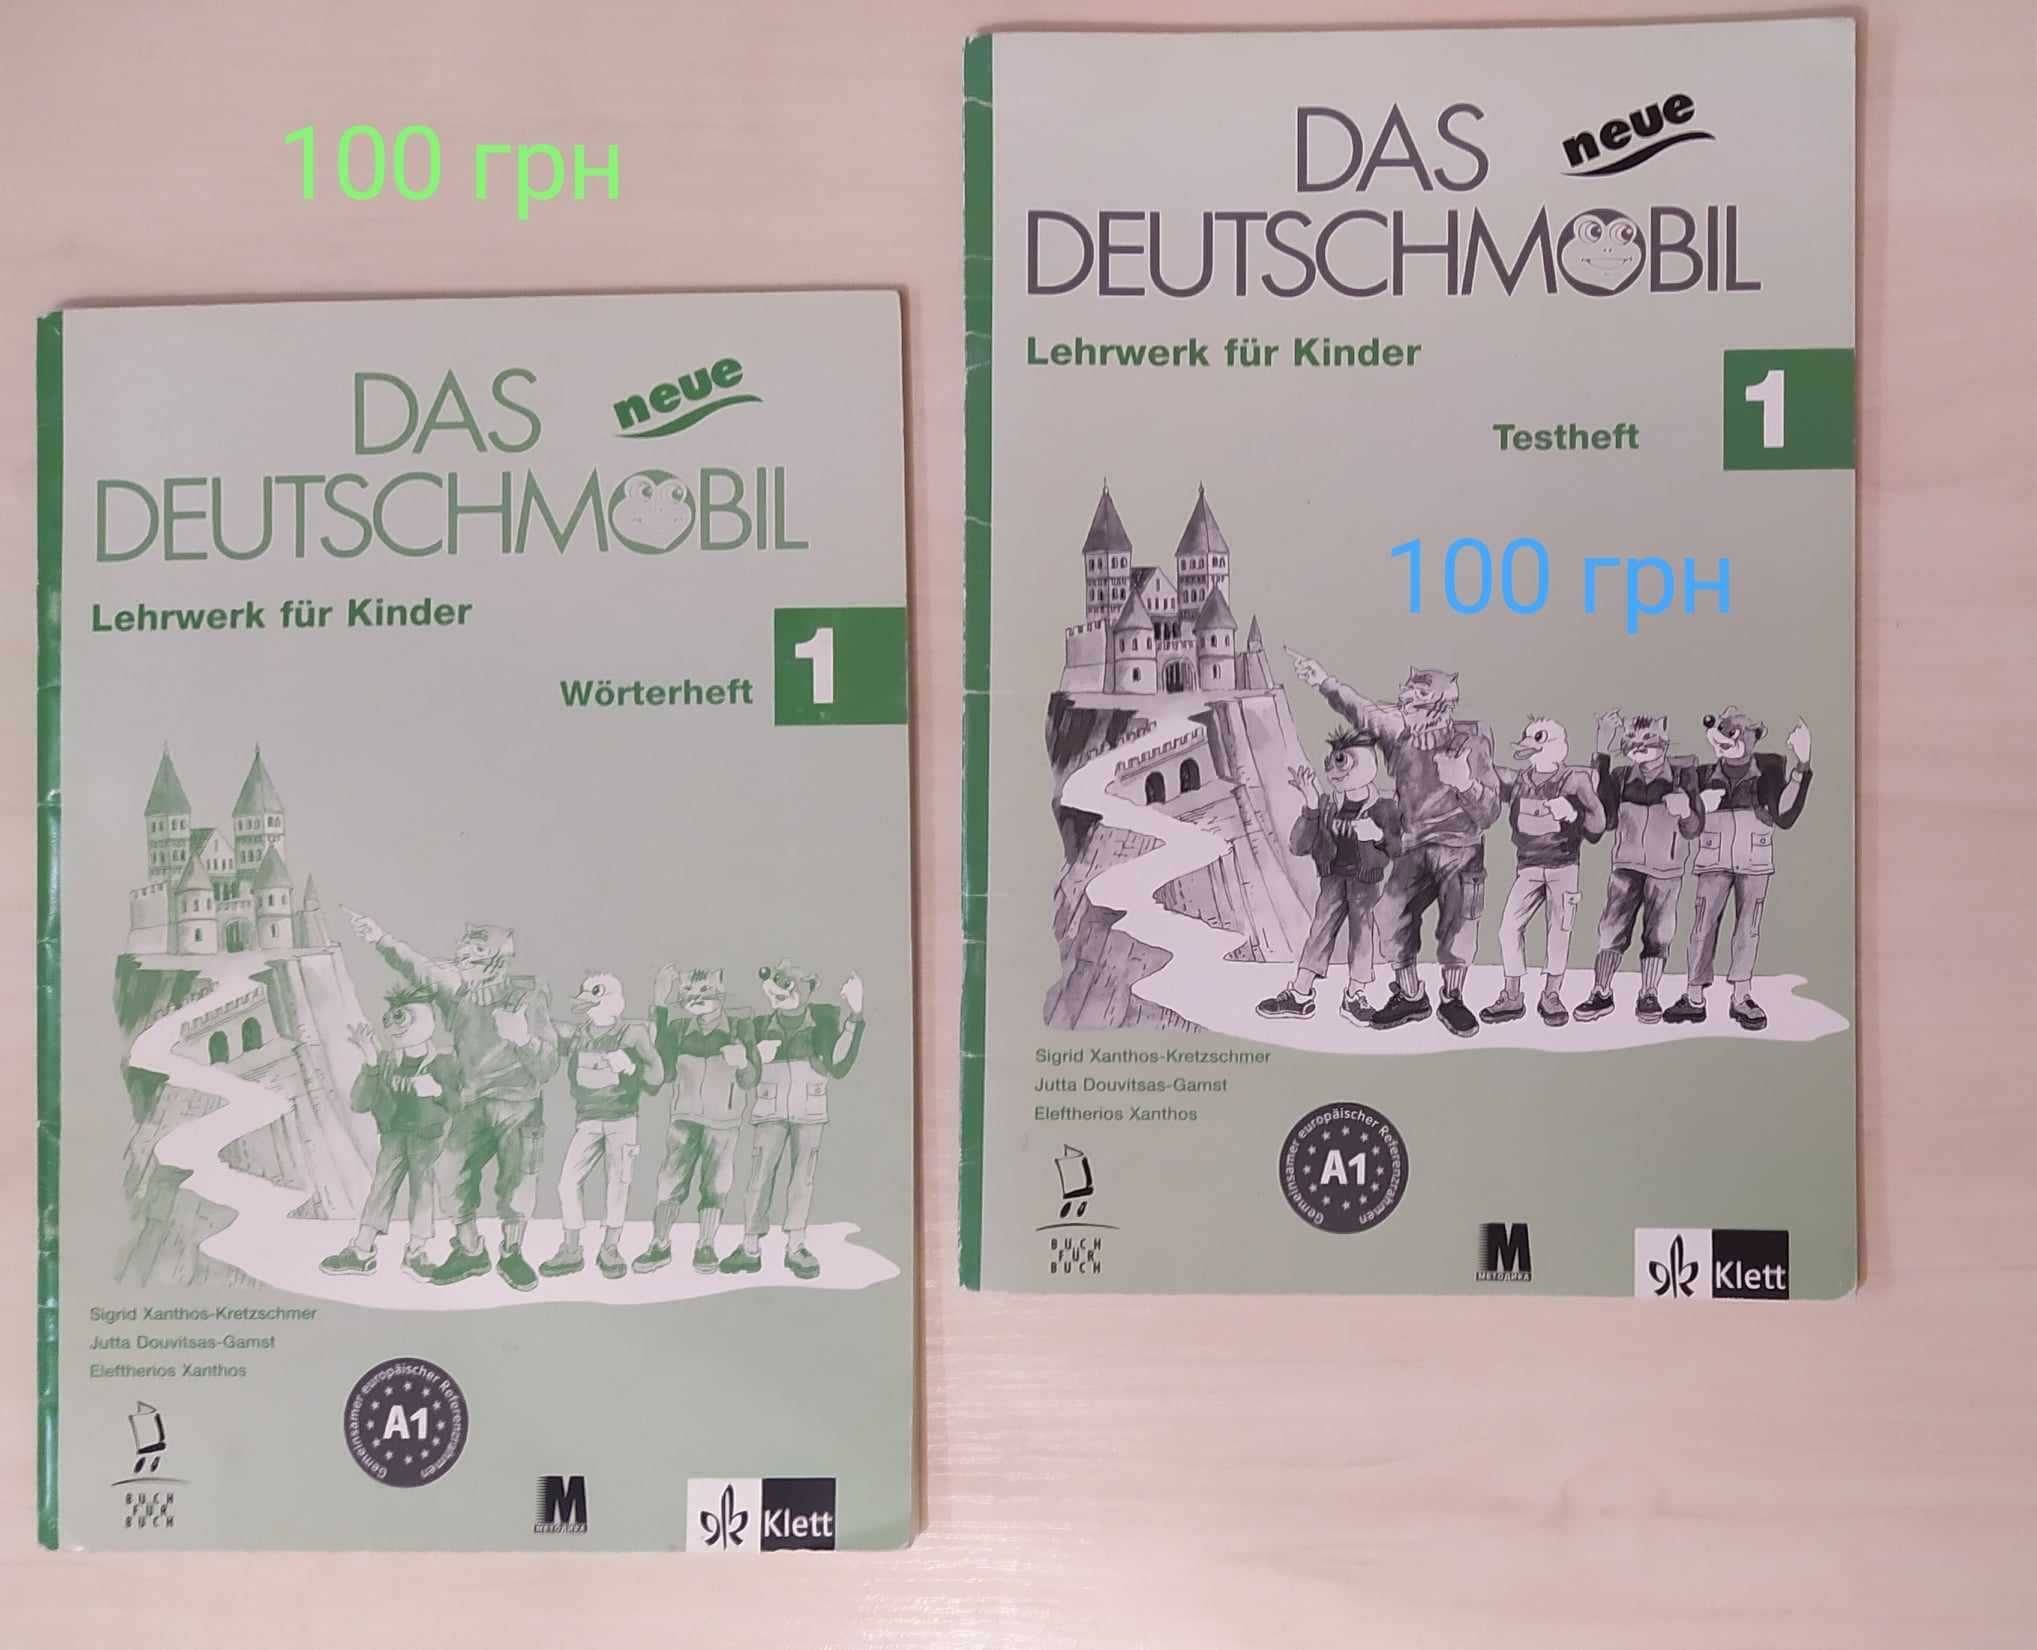 Das neue Deutschmobil 1 часть, 2 часть с аудио-СD